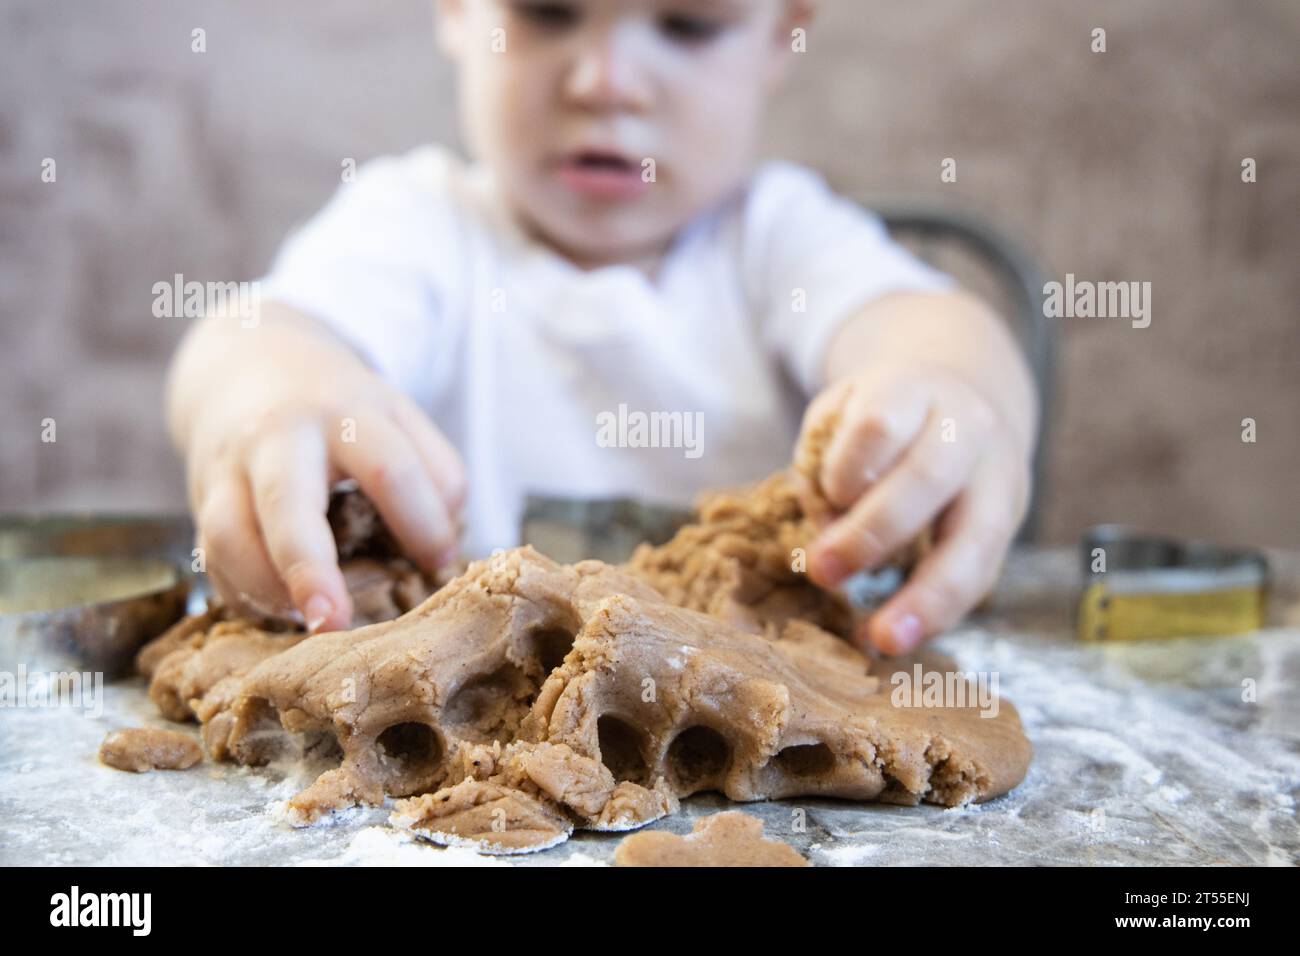 Le petit garçon pétrit la pâte pour les biscuits au gingembre Banque D'Images